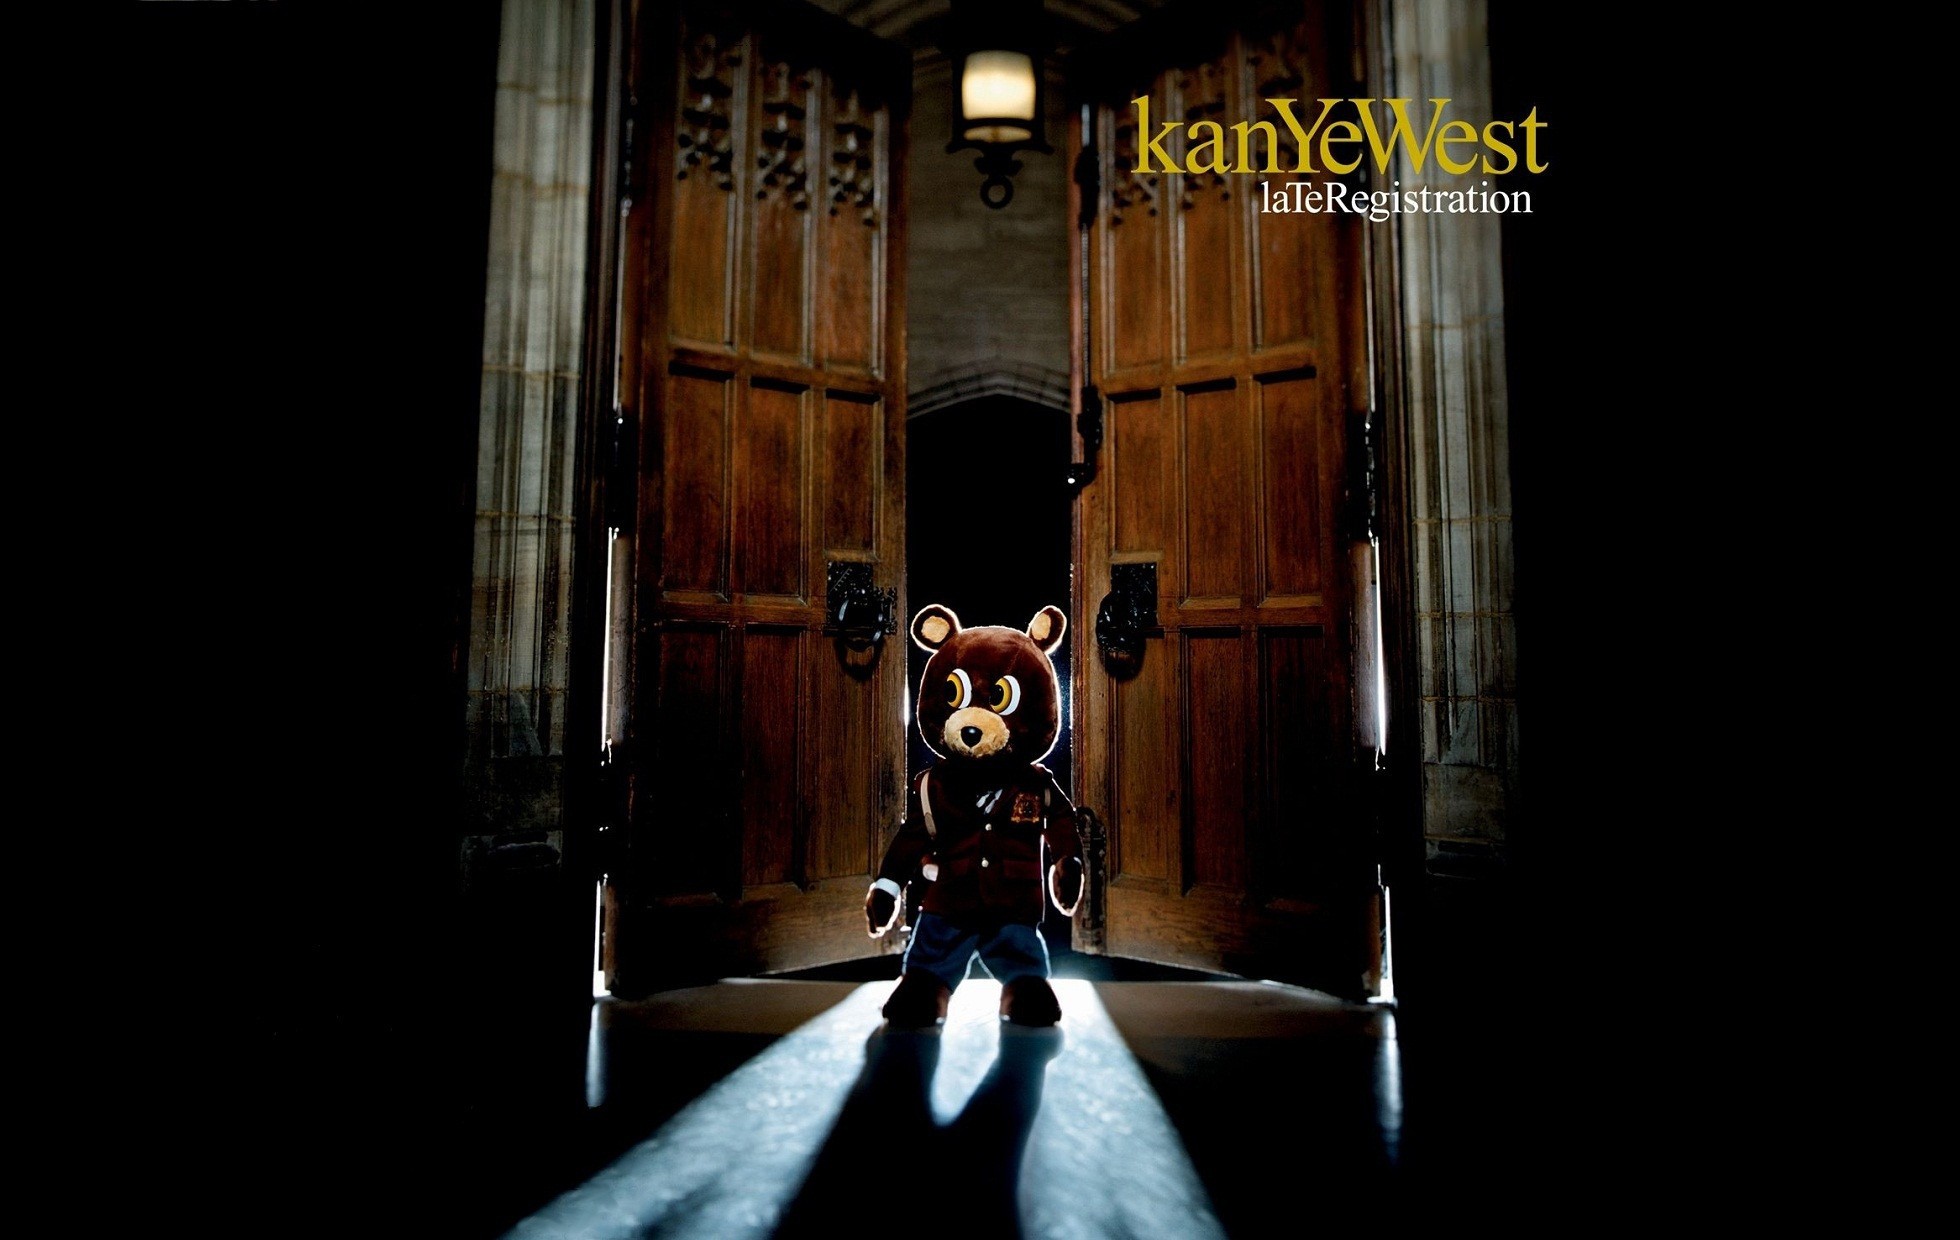 General 1960x1240 hip hop Kanye West music album covers singer